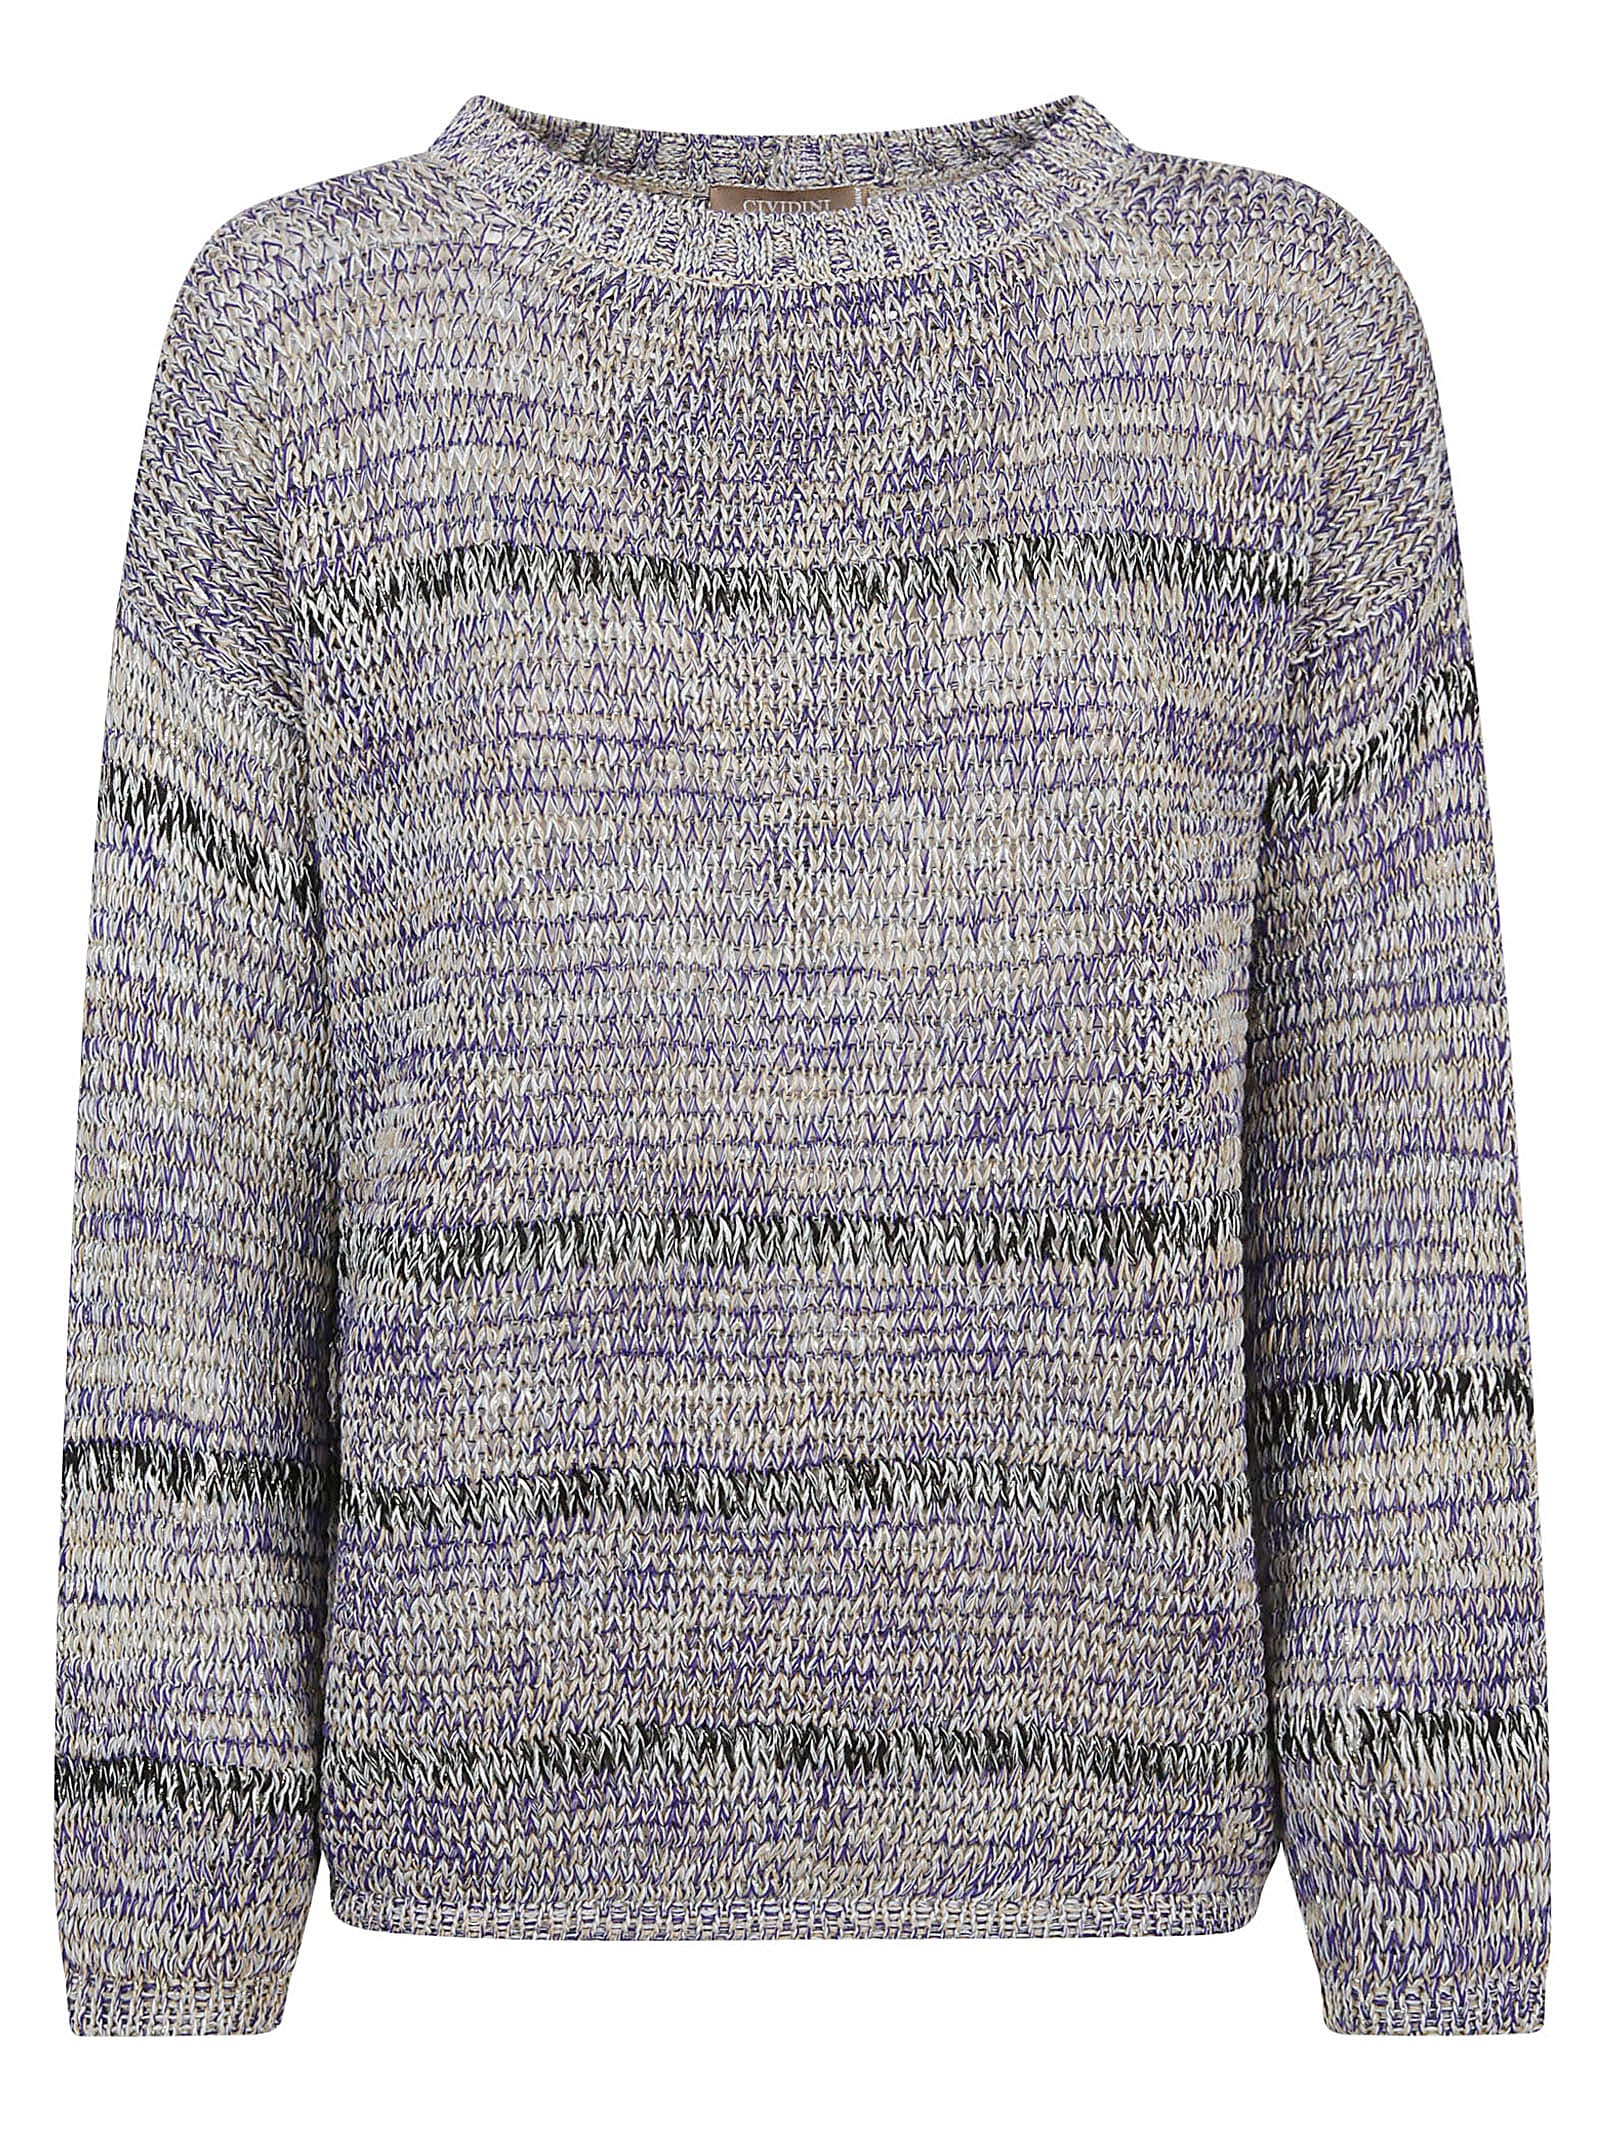 Cividini Sweater In Multicolor